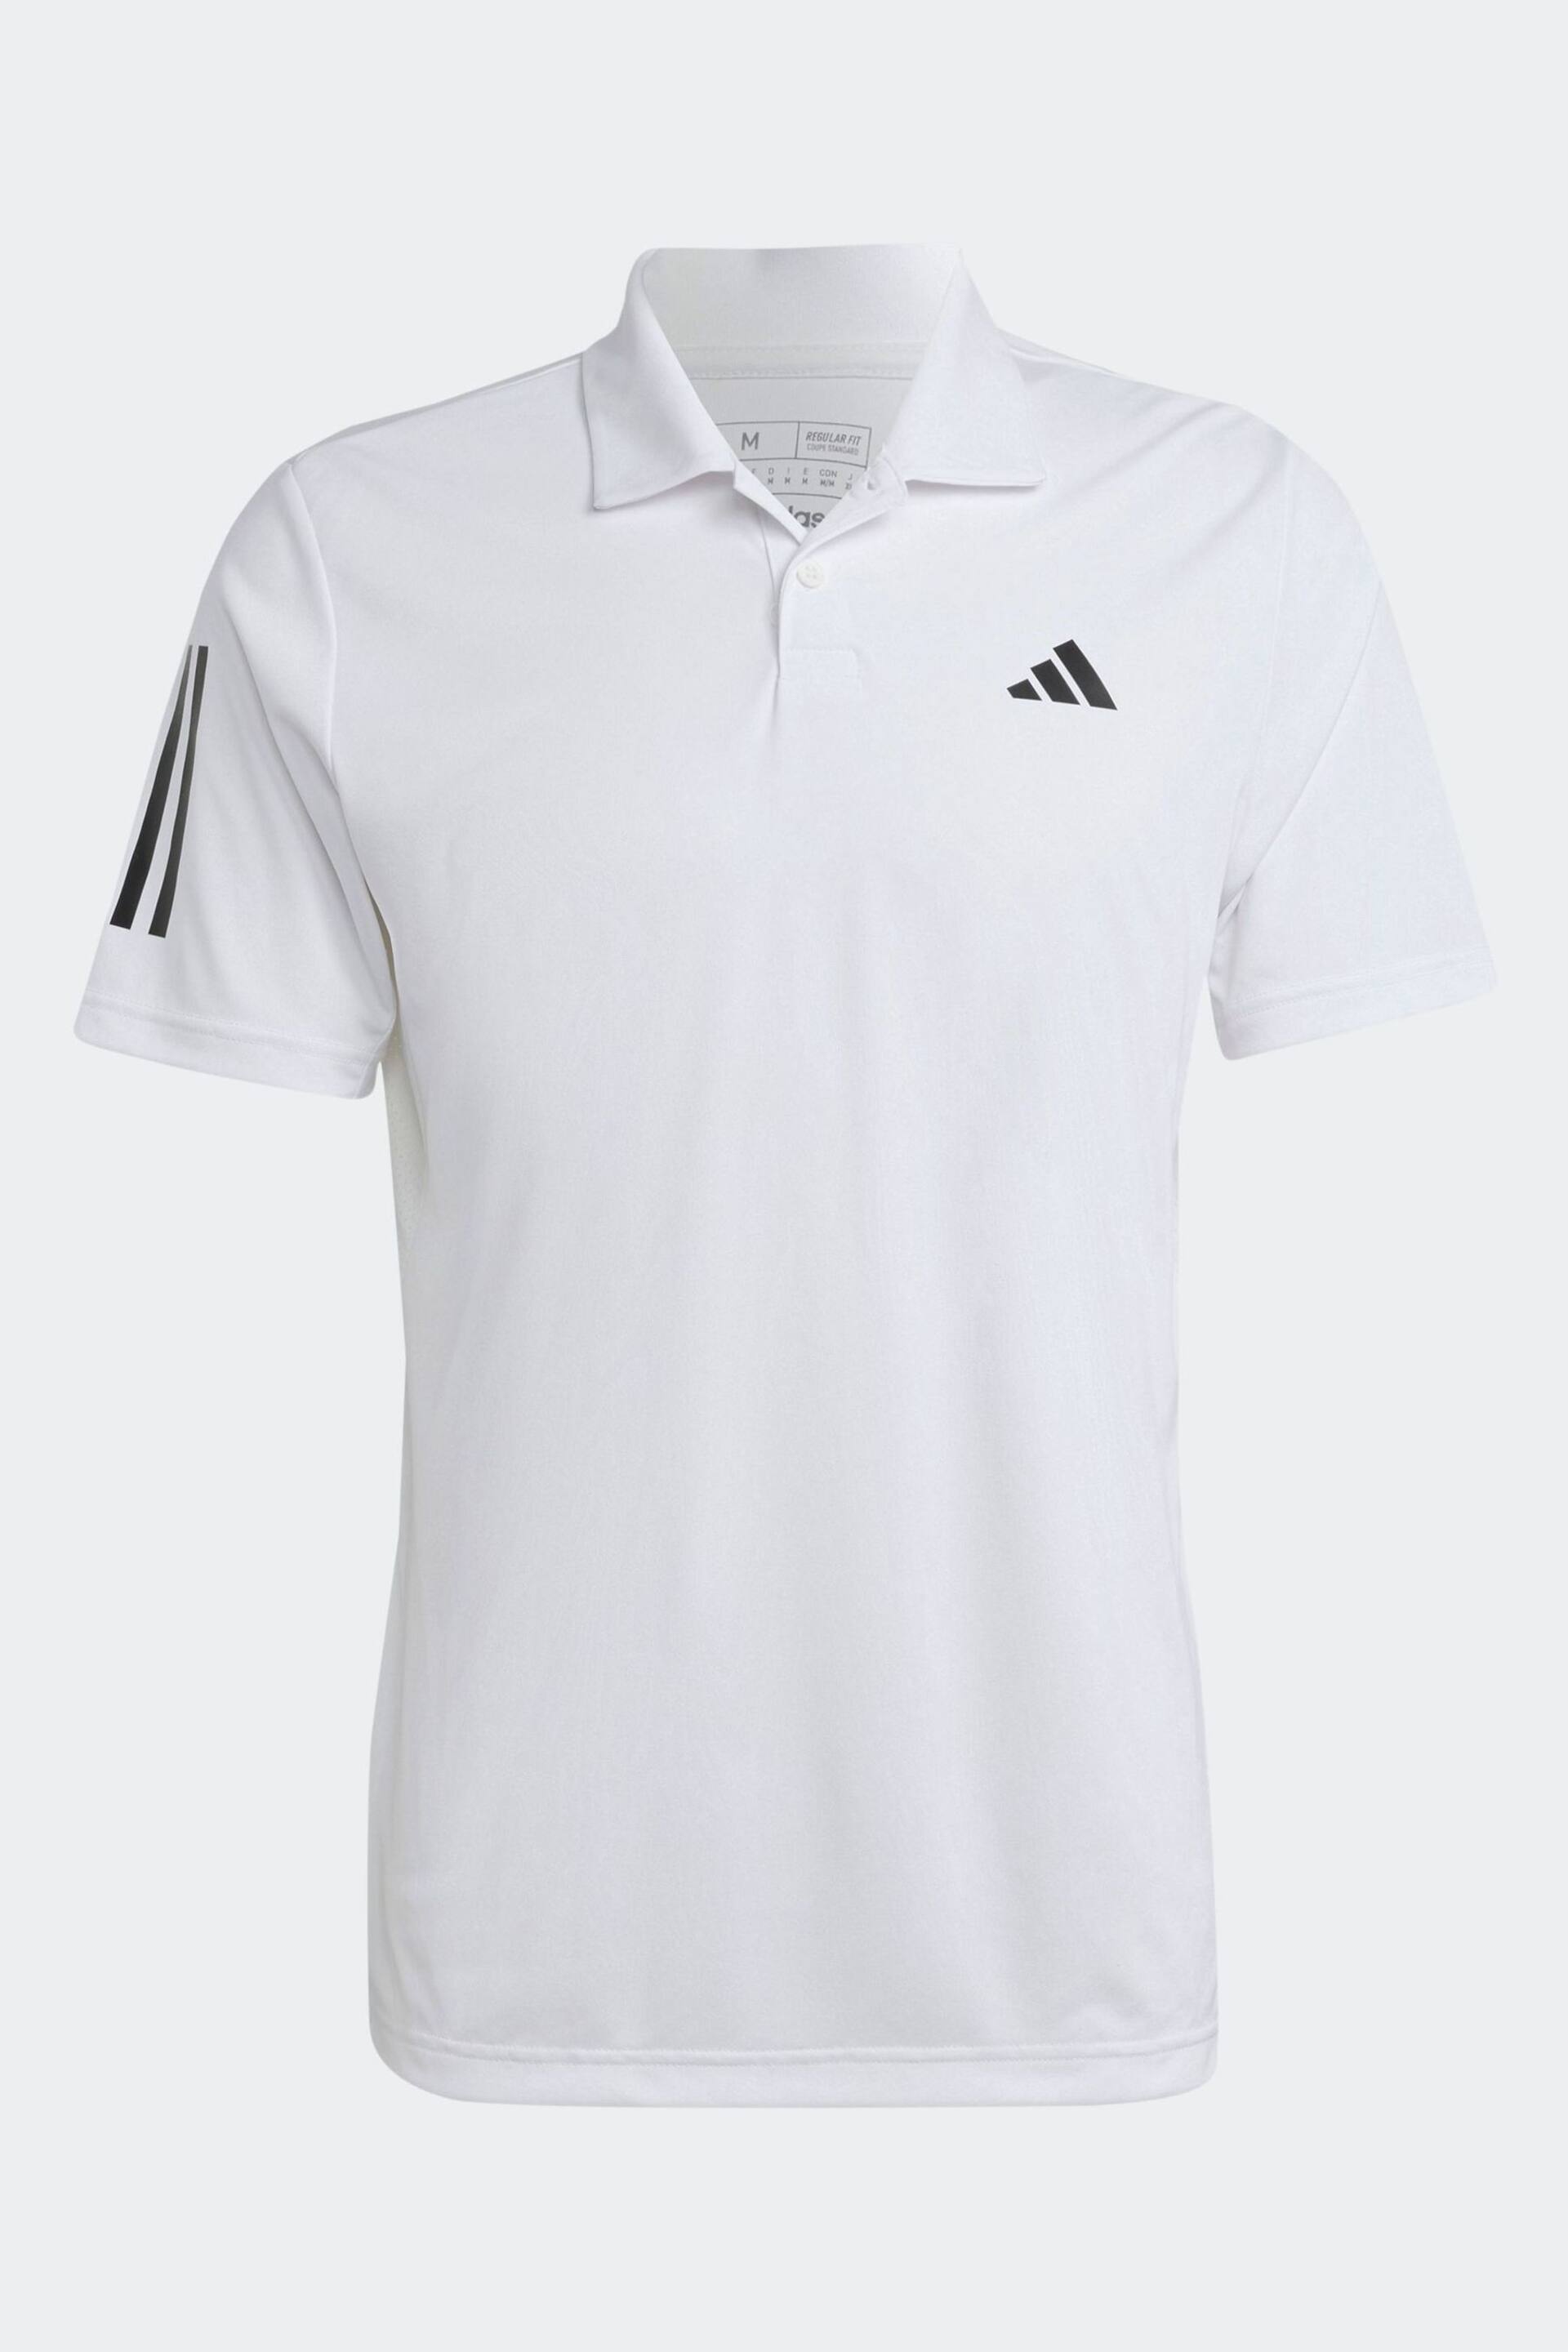 adidas White Club 3-Stripes Tennis Polo Shirt - Image 7 of 7